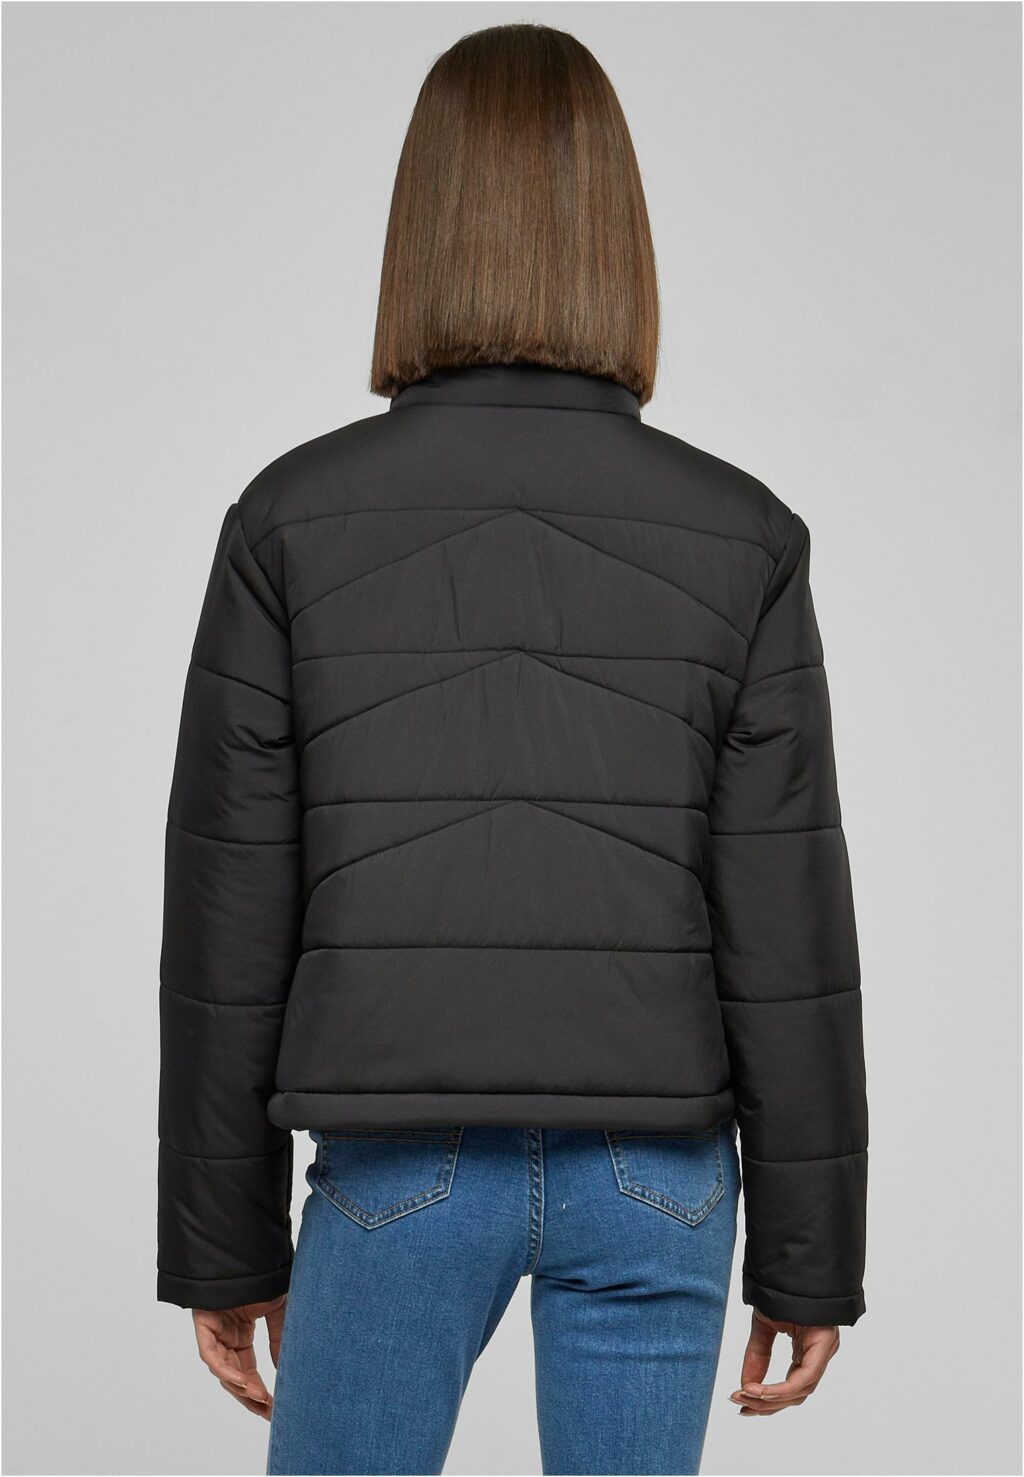 Urban Classics Ladies Arrow Puffer Jacket black TB6074